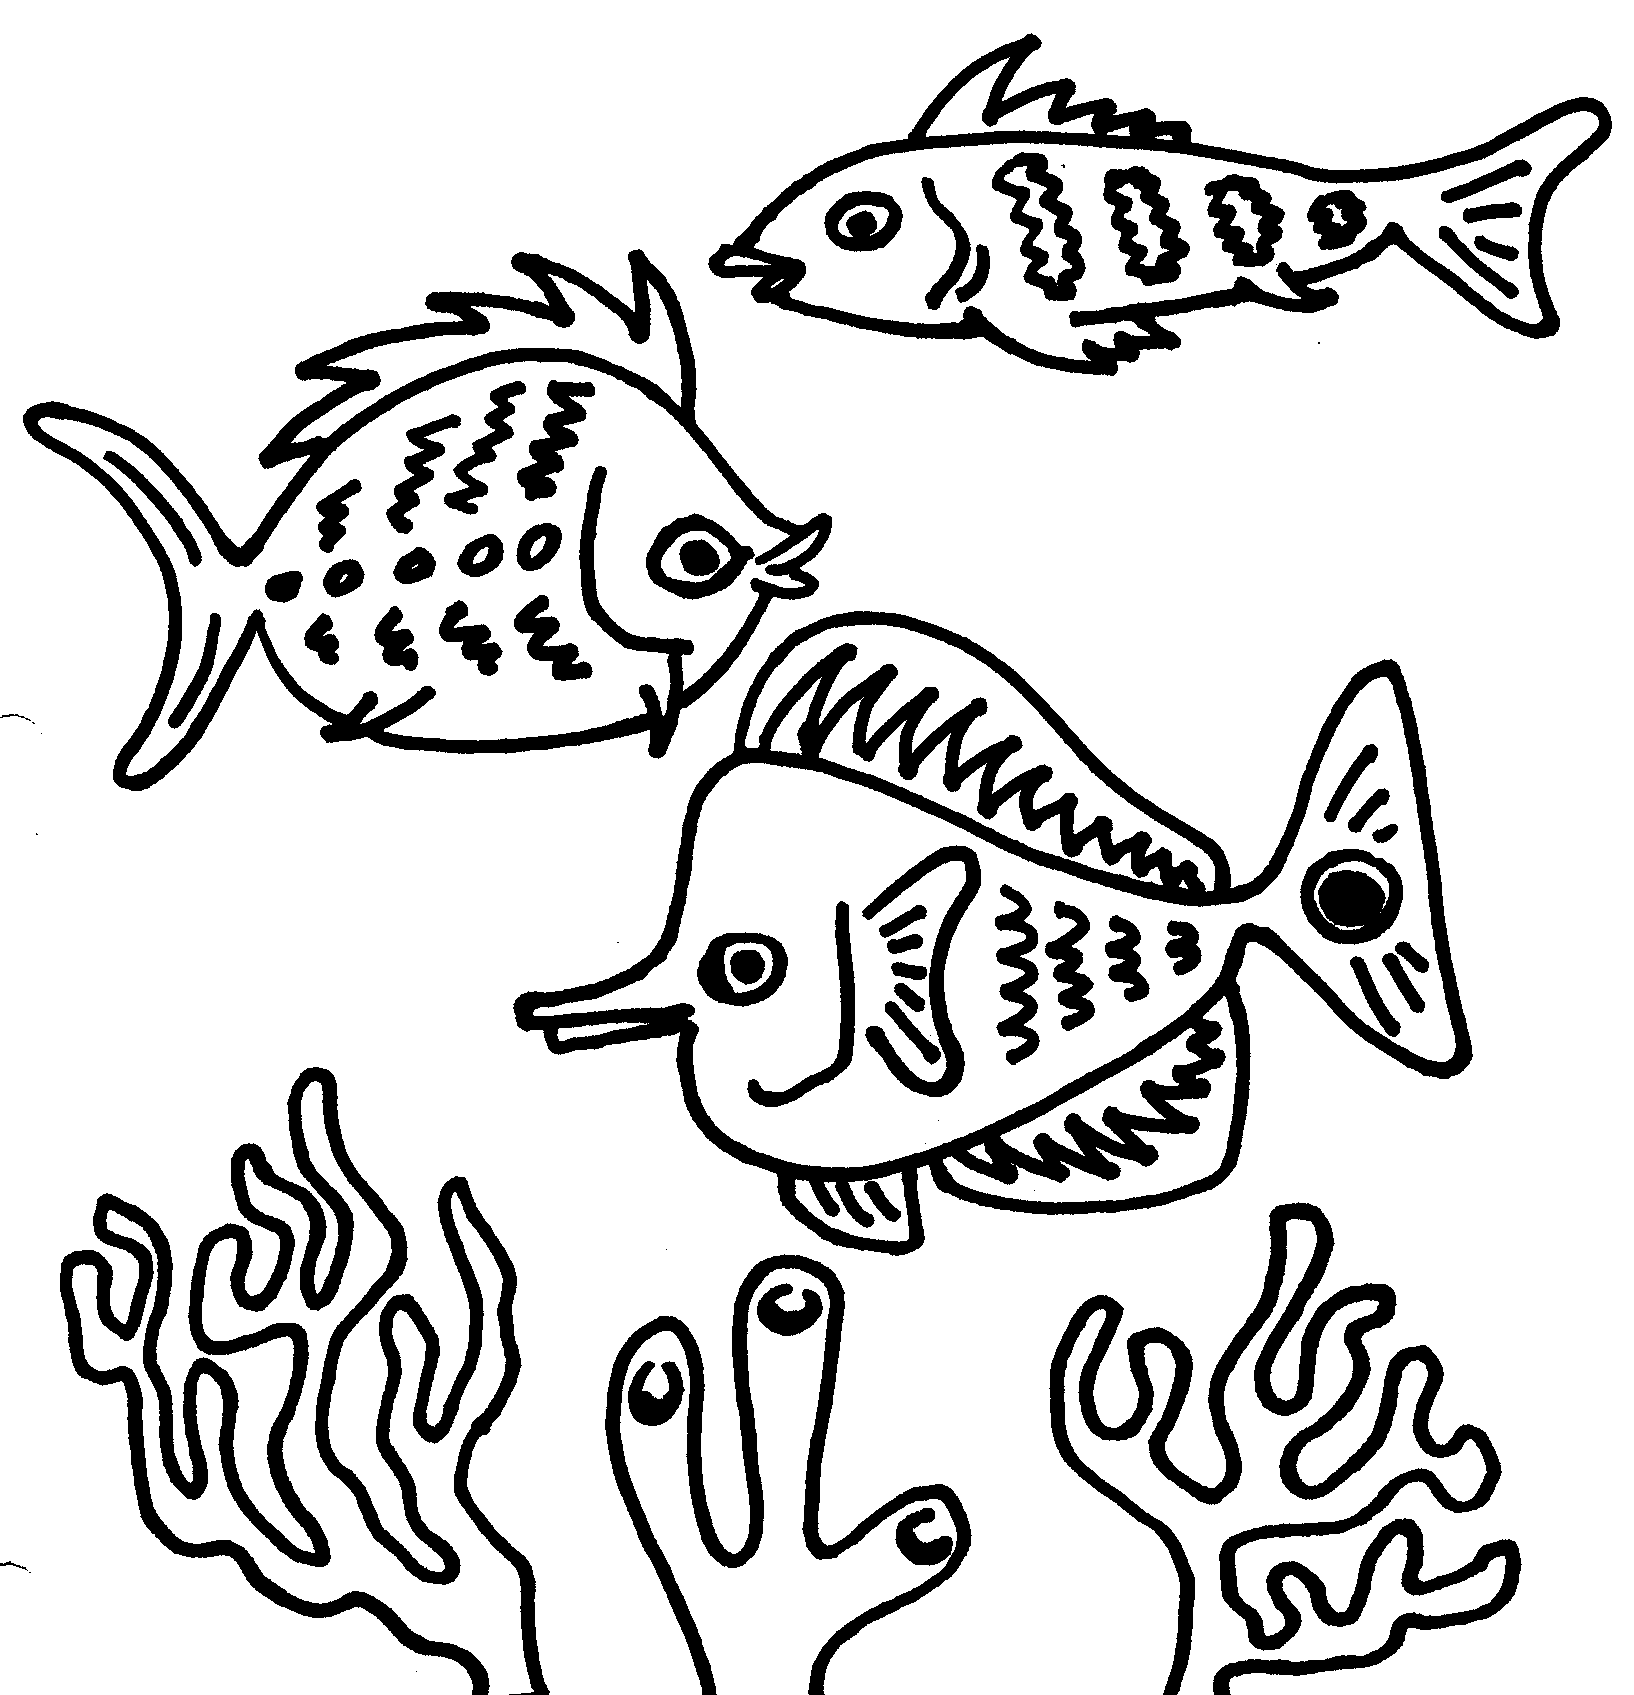 Dessin gratuit de poisson a imprimer et colorier